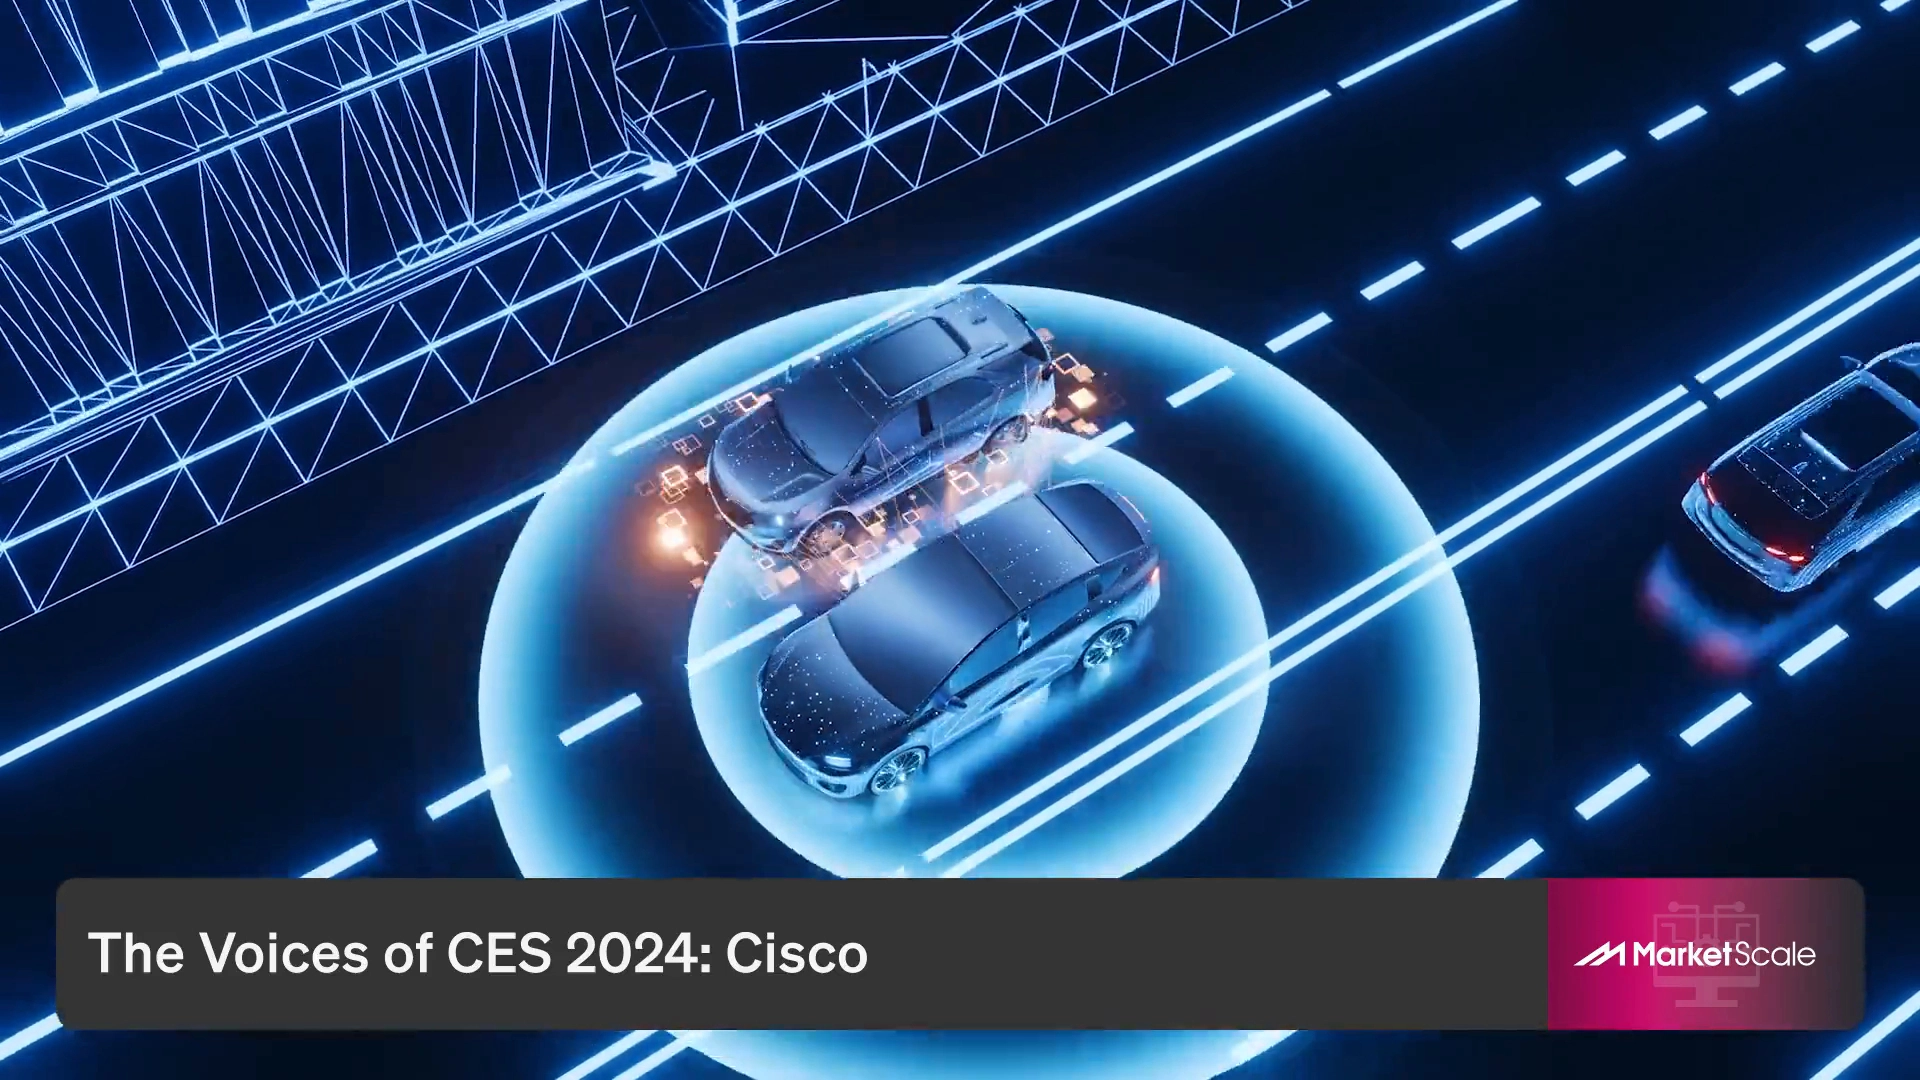 CES 2024: Indy Autonomous Challenge Drives Forward the Future of Autonomous Vehicle Technology